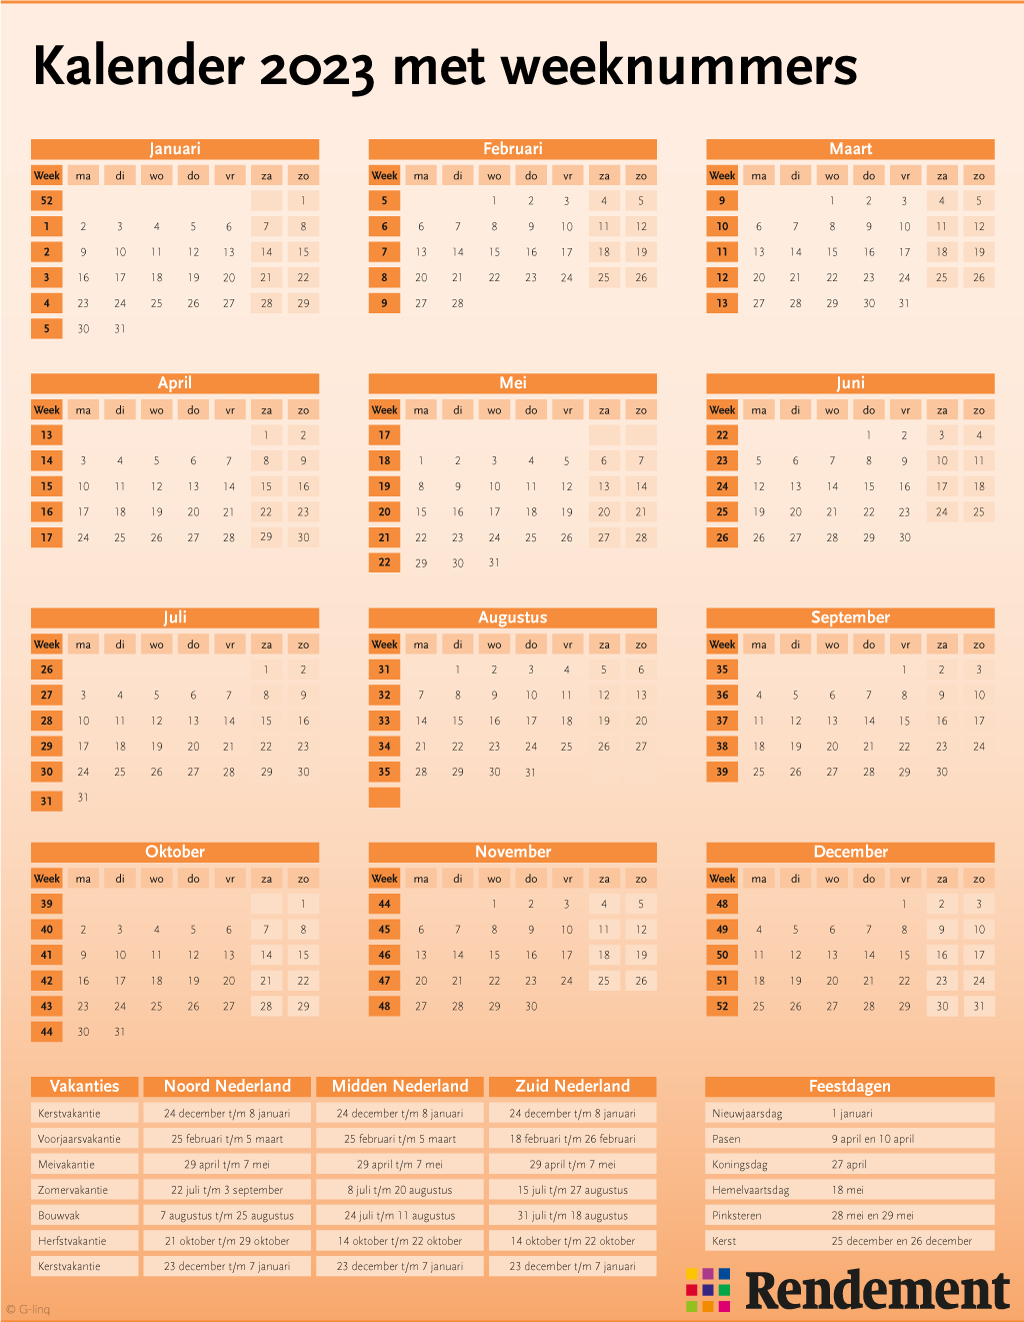 Hoe ziet de jaarkalender van 2023 eruit? U vindt hem hier, met weeknummers en de feestdagen en de schoolvakanties in 2023.